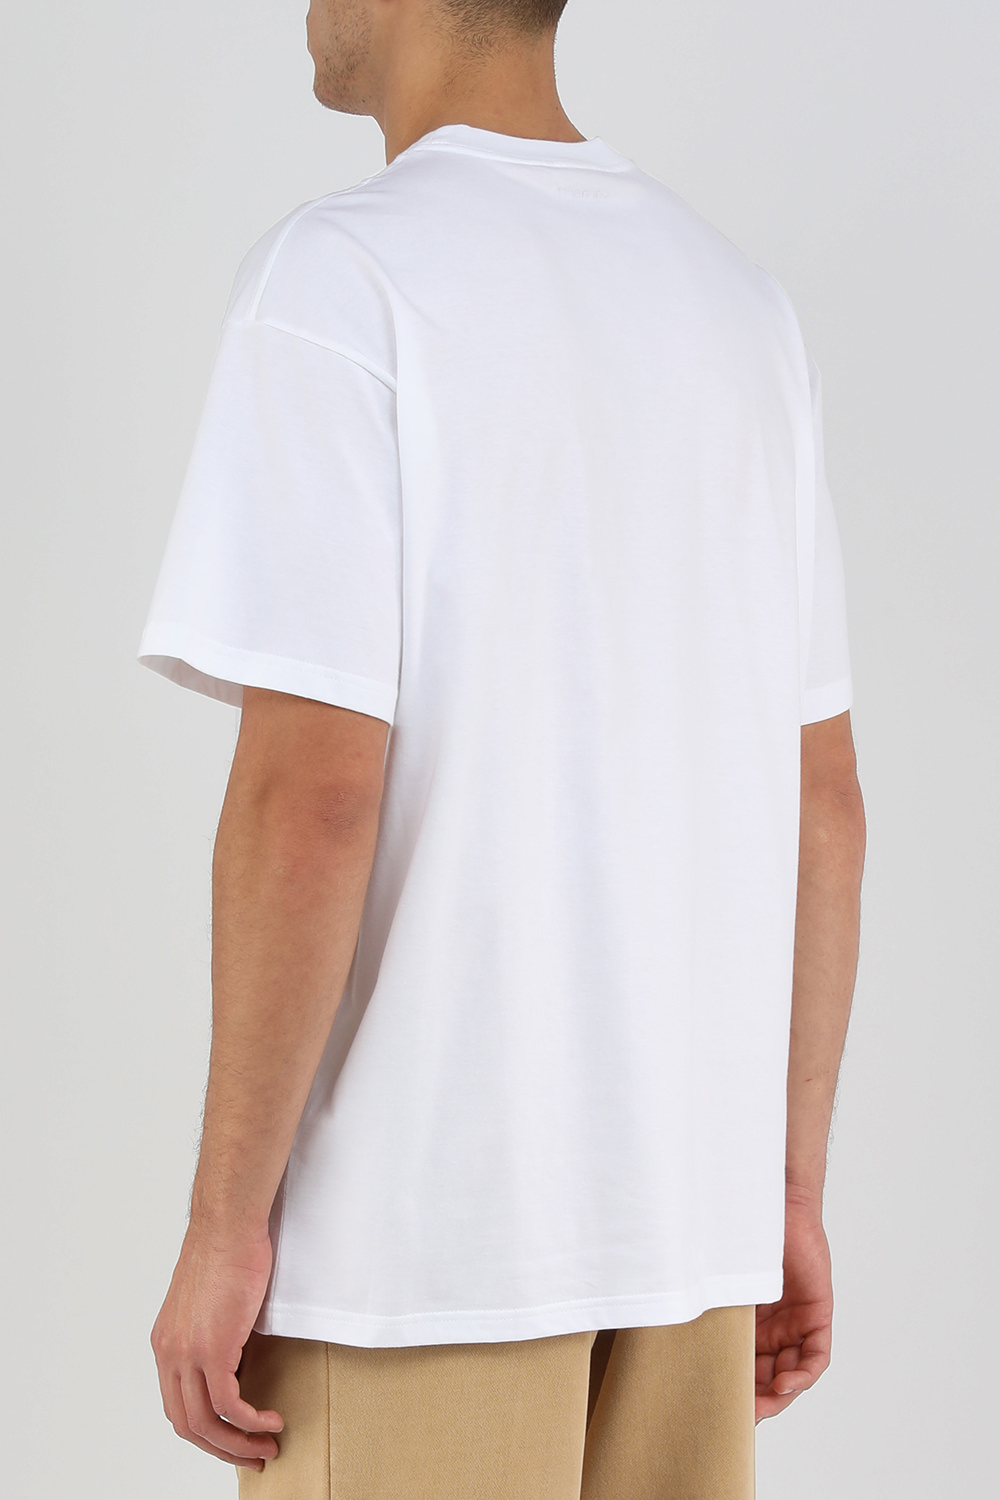 חולצת טי לבנה עם פרינט ברווז ממותג CARHARTT WIP